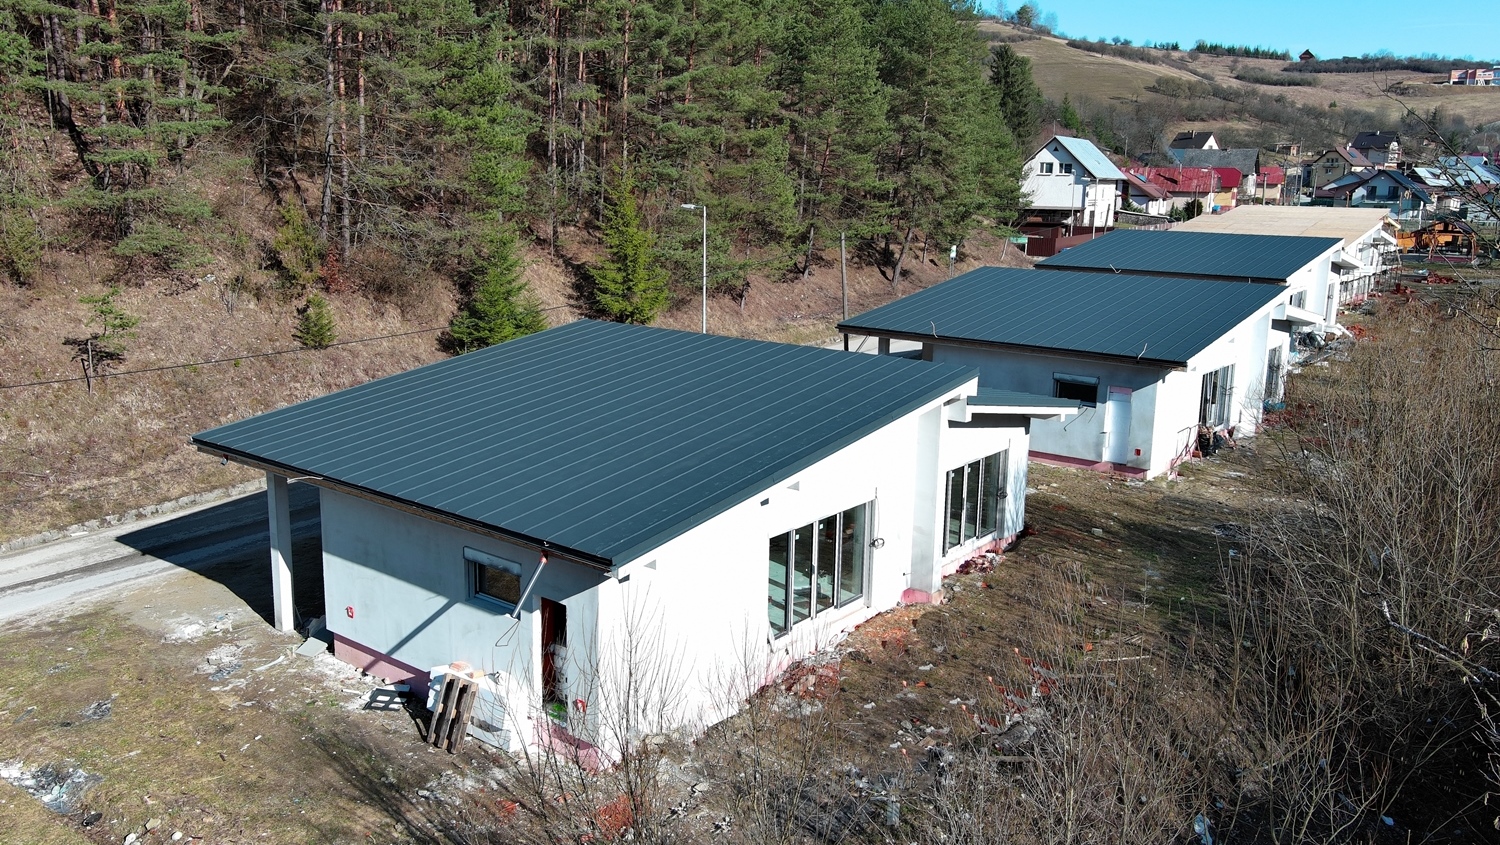 EXKLUZÍVNE! Slnečný 4-izbový rodinný dom s garážou, krásne prostredie, predaj, 14 km od Žiliny, Cena: 296.000 €